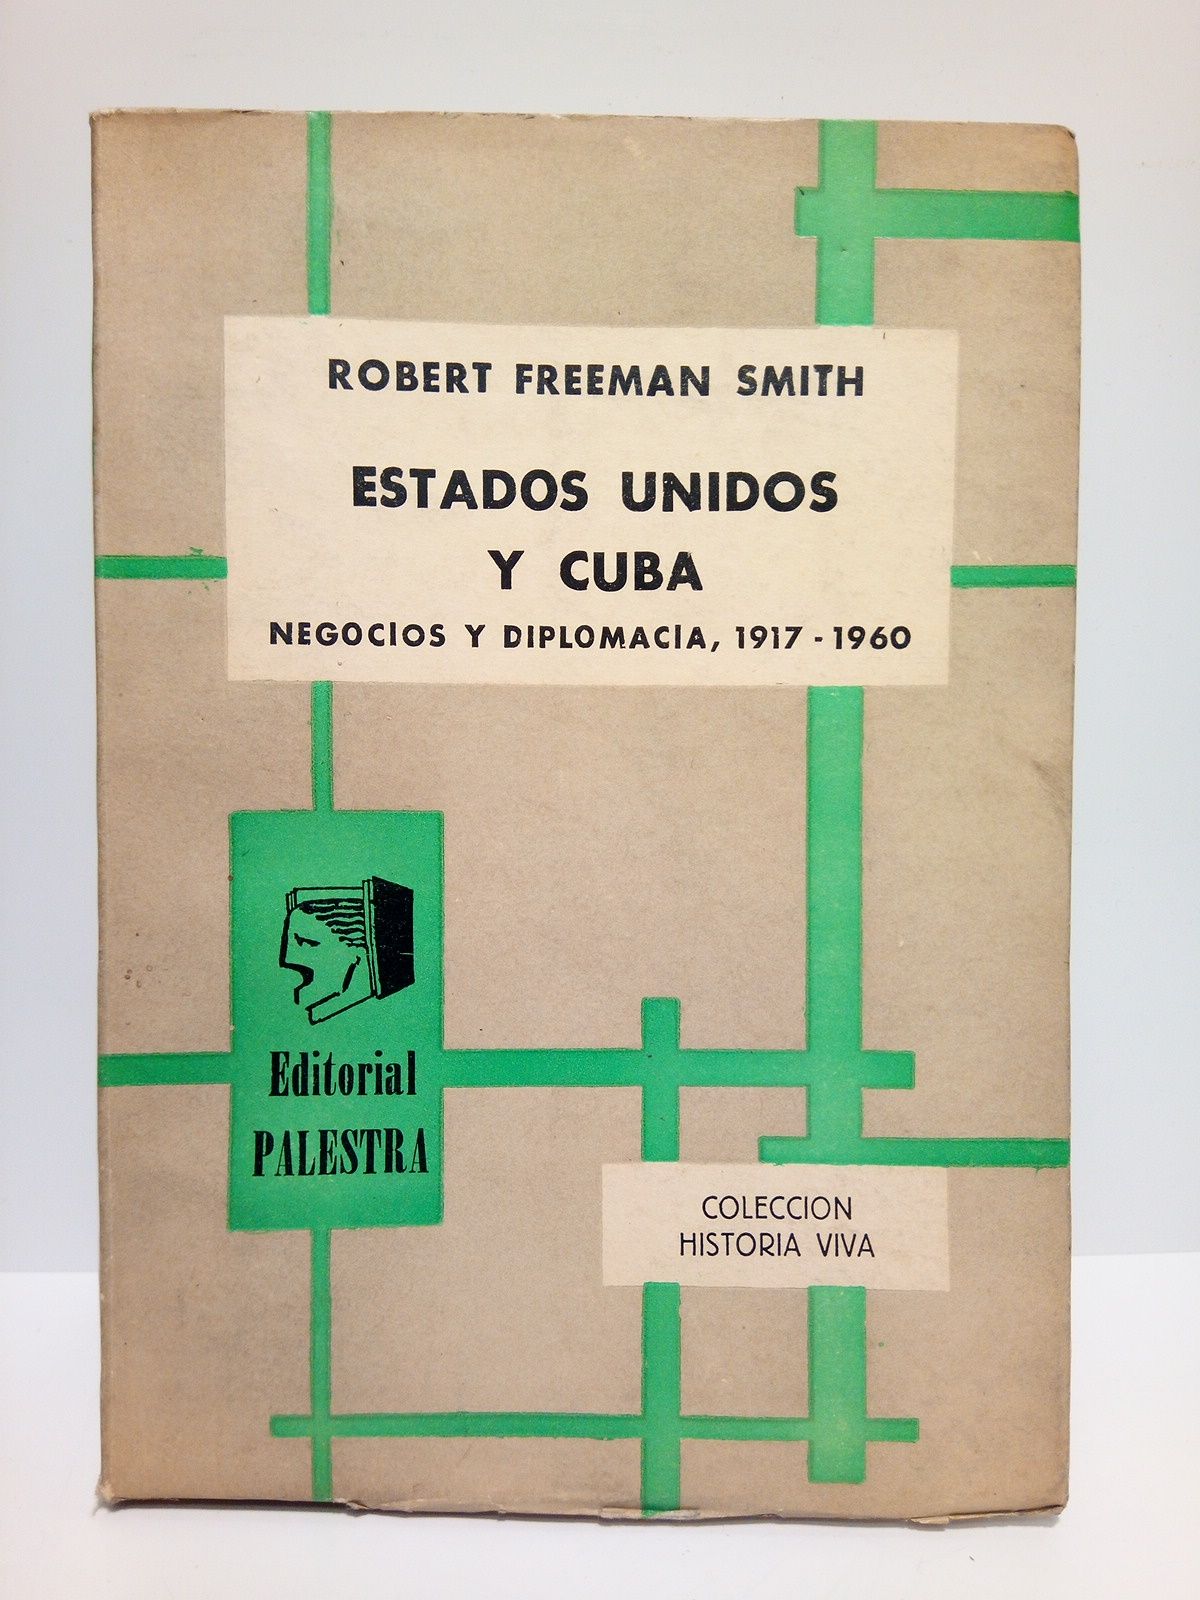 FREEMAN SMITH, Robert - Estados Unidos y Cuba: Negocios y diplomacia, 1917-1960 /  Traduccin de Amelia Aguado